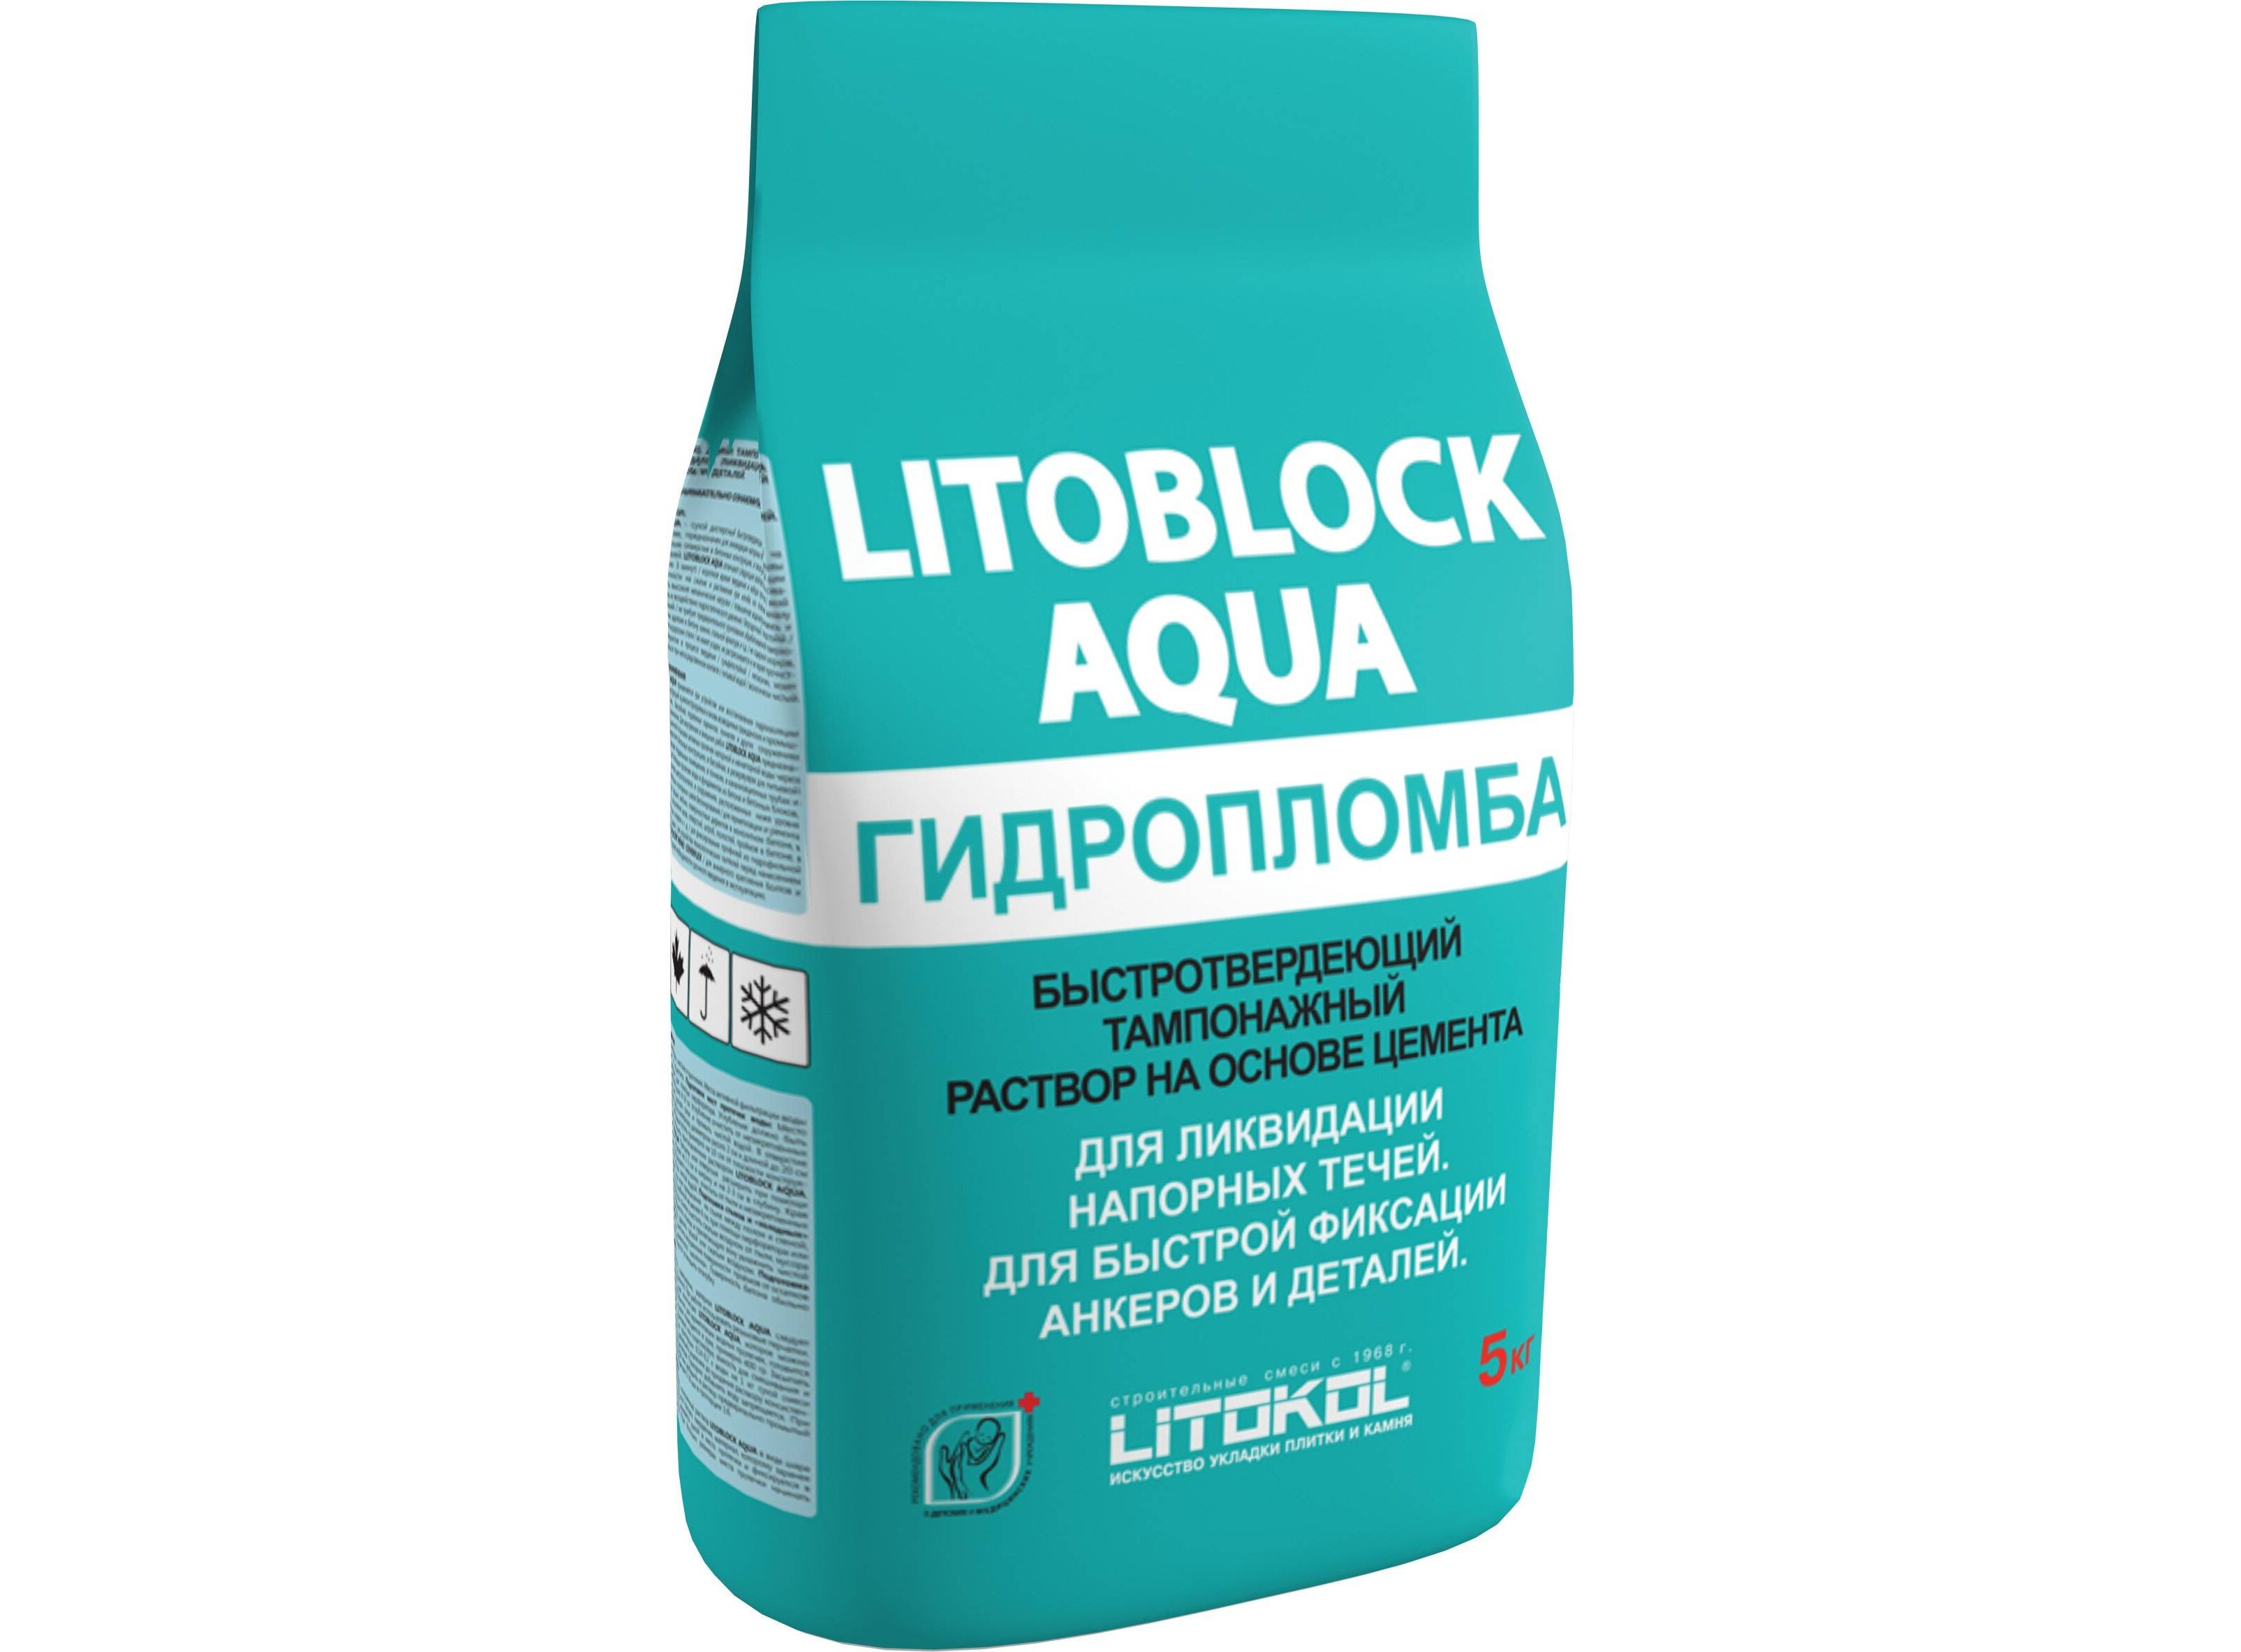 Ремонтный раствор. Гидропломба Литокол. LITOBLOCK Aqua гидропломба. LITOBLOCK Aqua гидропломба (5kg al.Bag). Гидропломба Литокол для бетона.